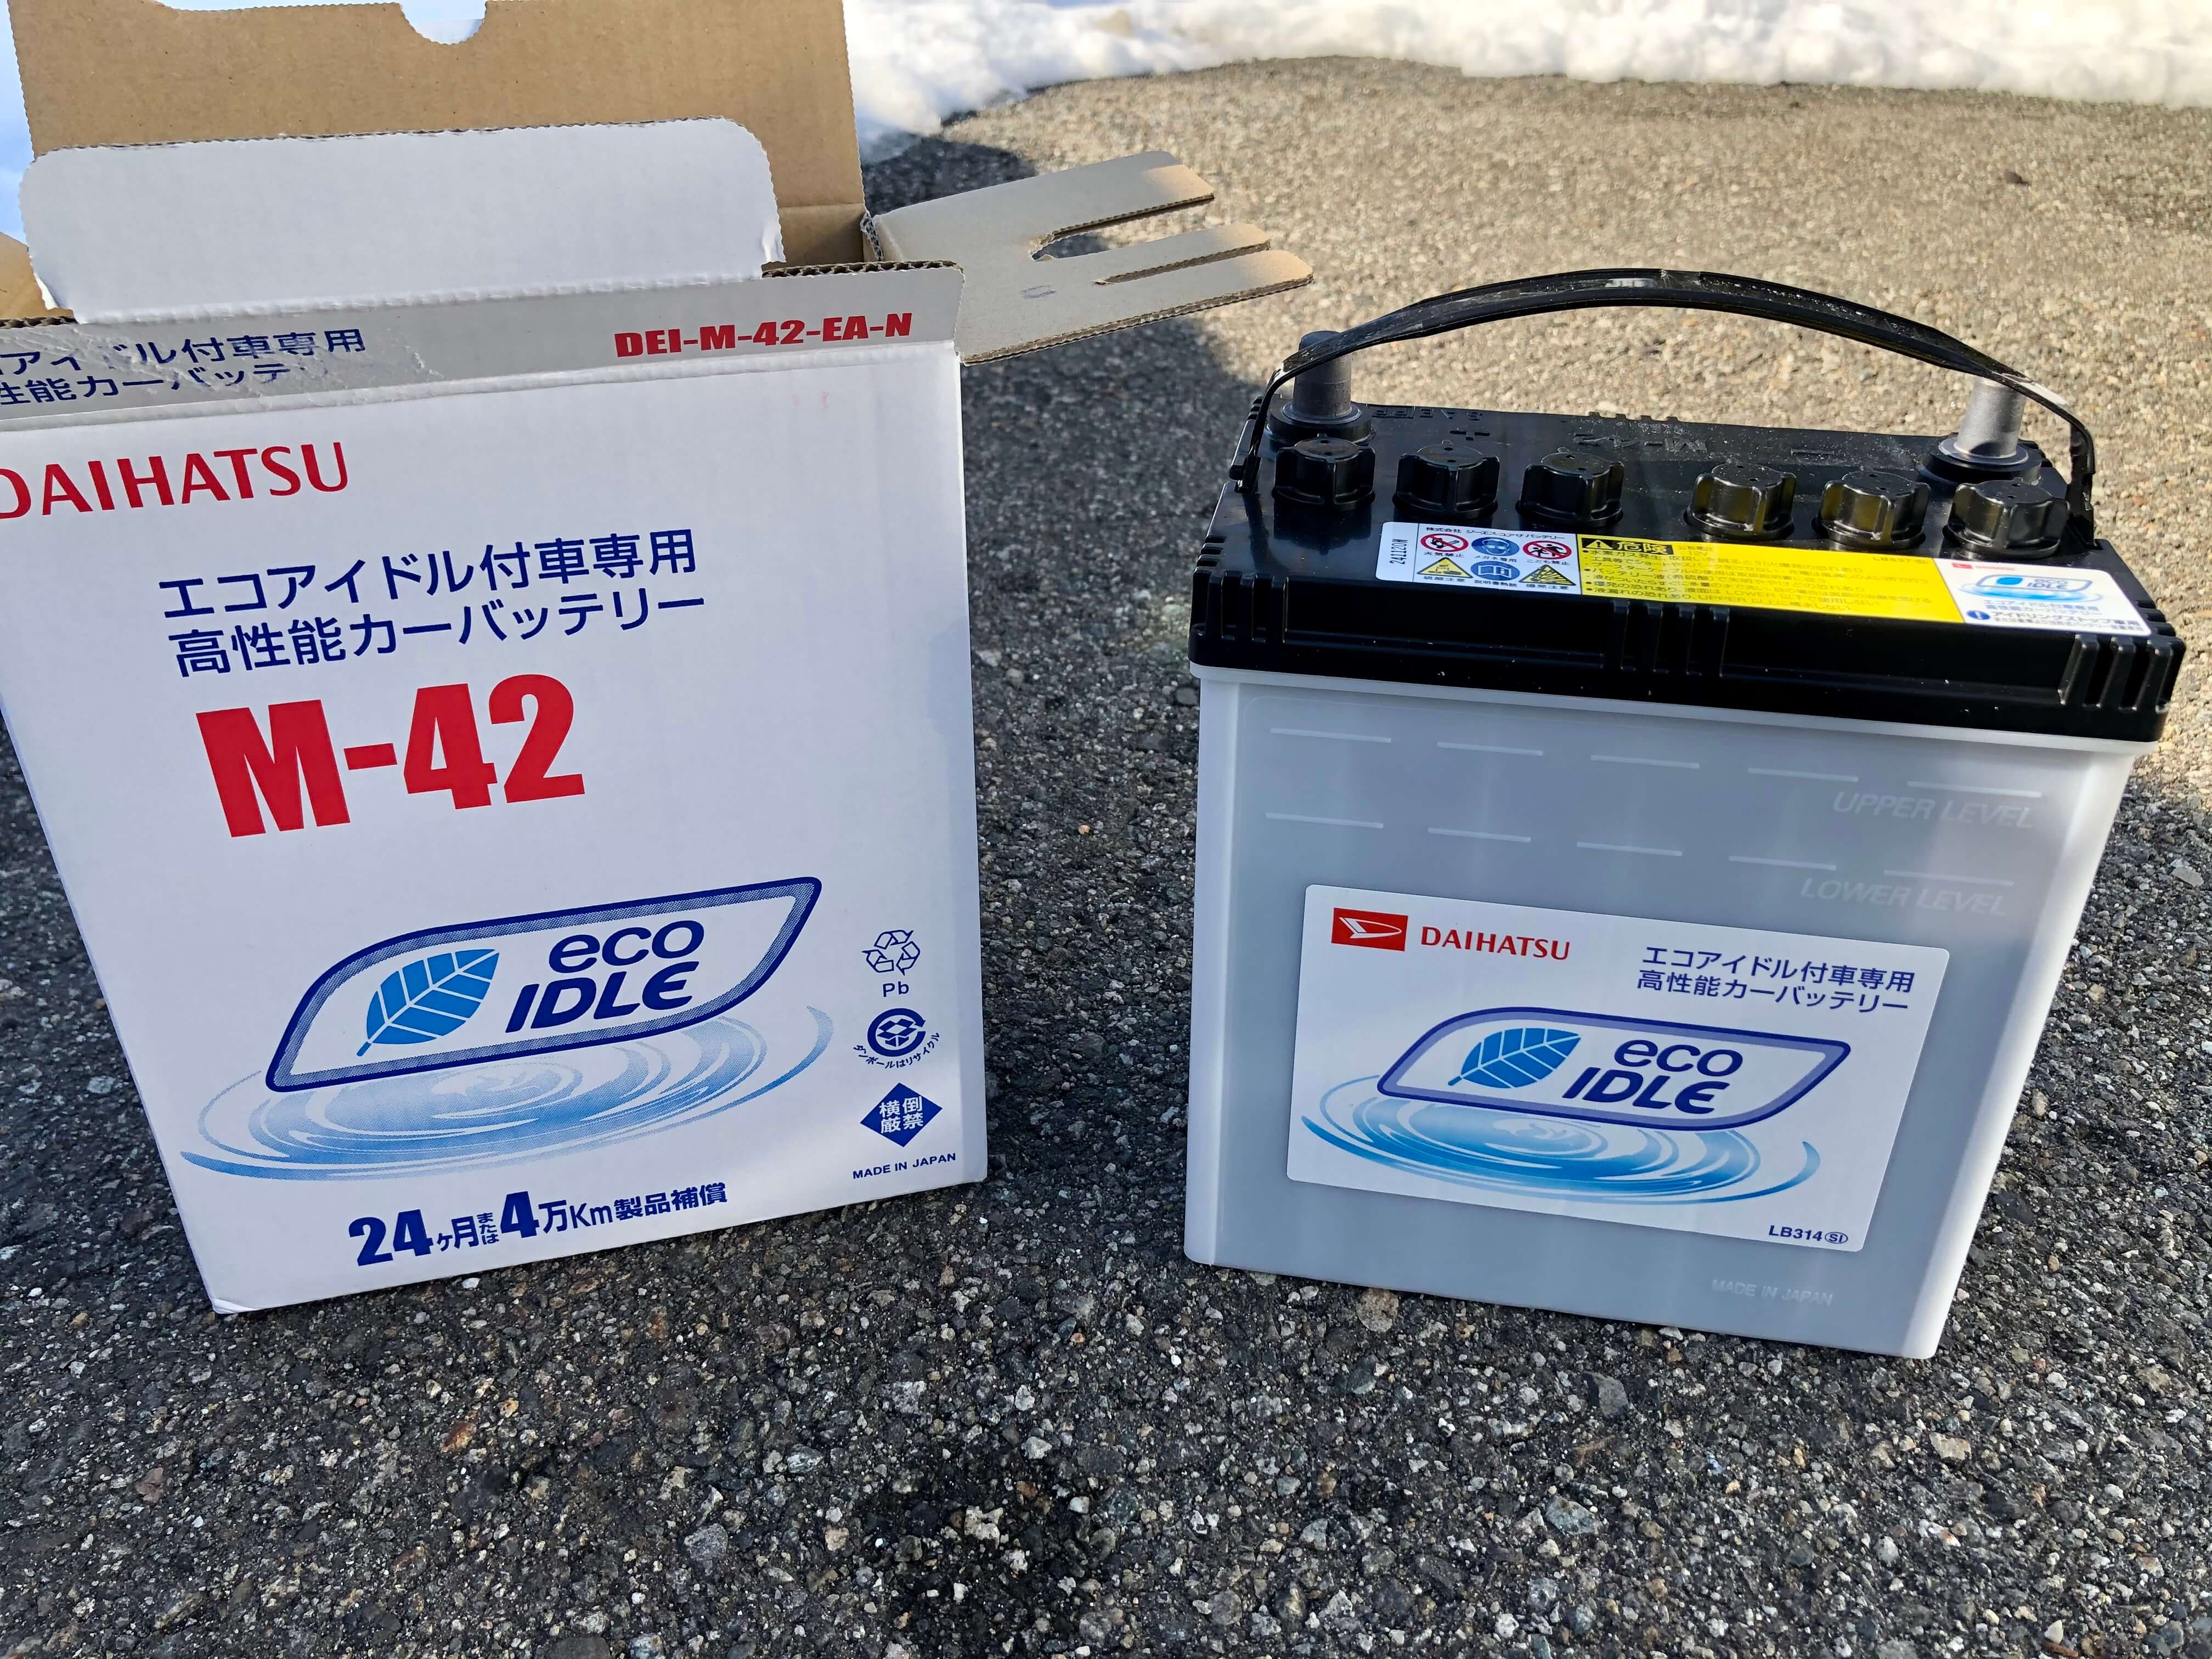 ダイハツアトレーワゴンのバッテリー交換方法 純正バッテリーは高い いくら 富山のランチ お出かけ 遊びのおすすめ情報 ココなび